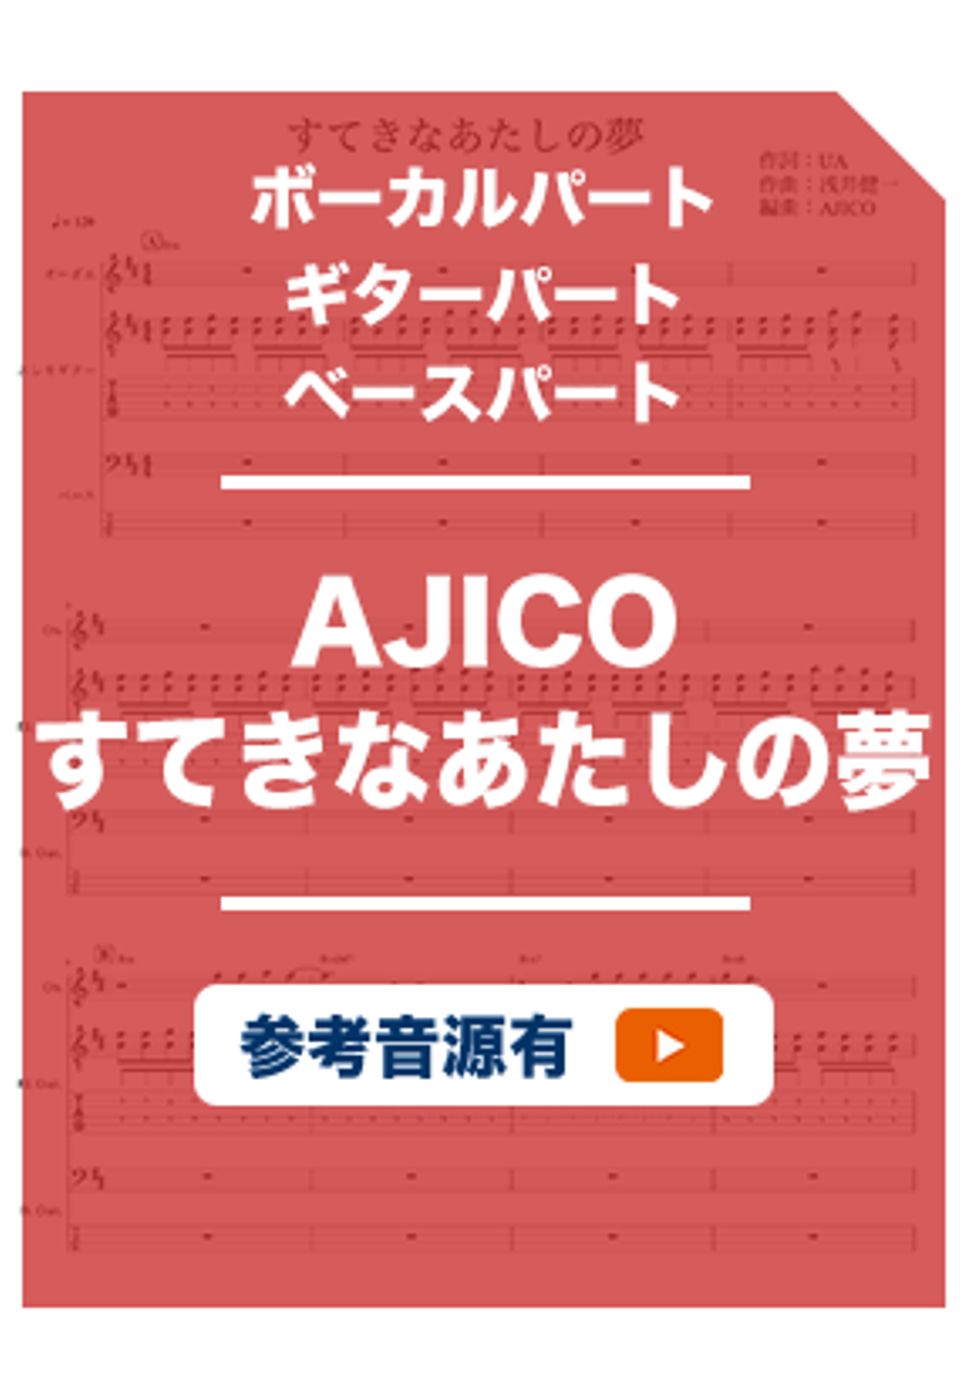 AJICO - すてきなあたしの夢 (バンドスコア) by ホットレモンティーのレモン